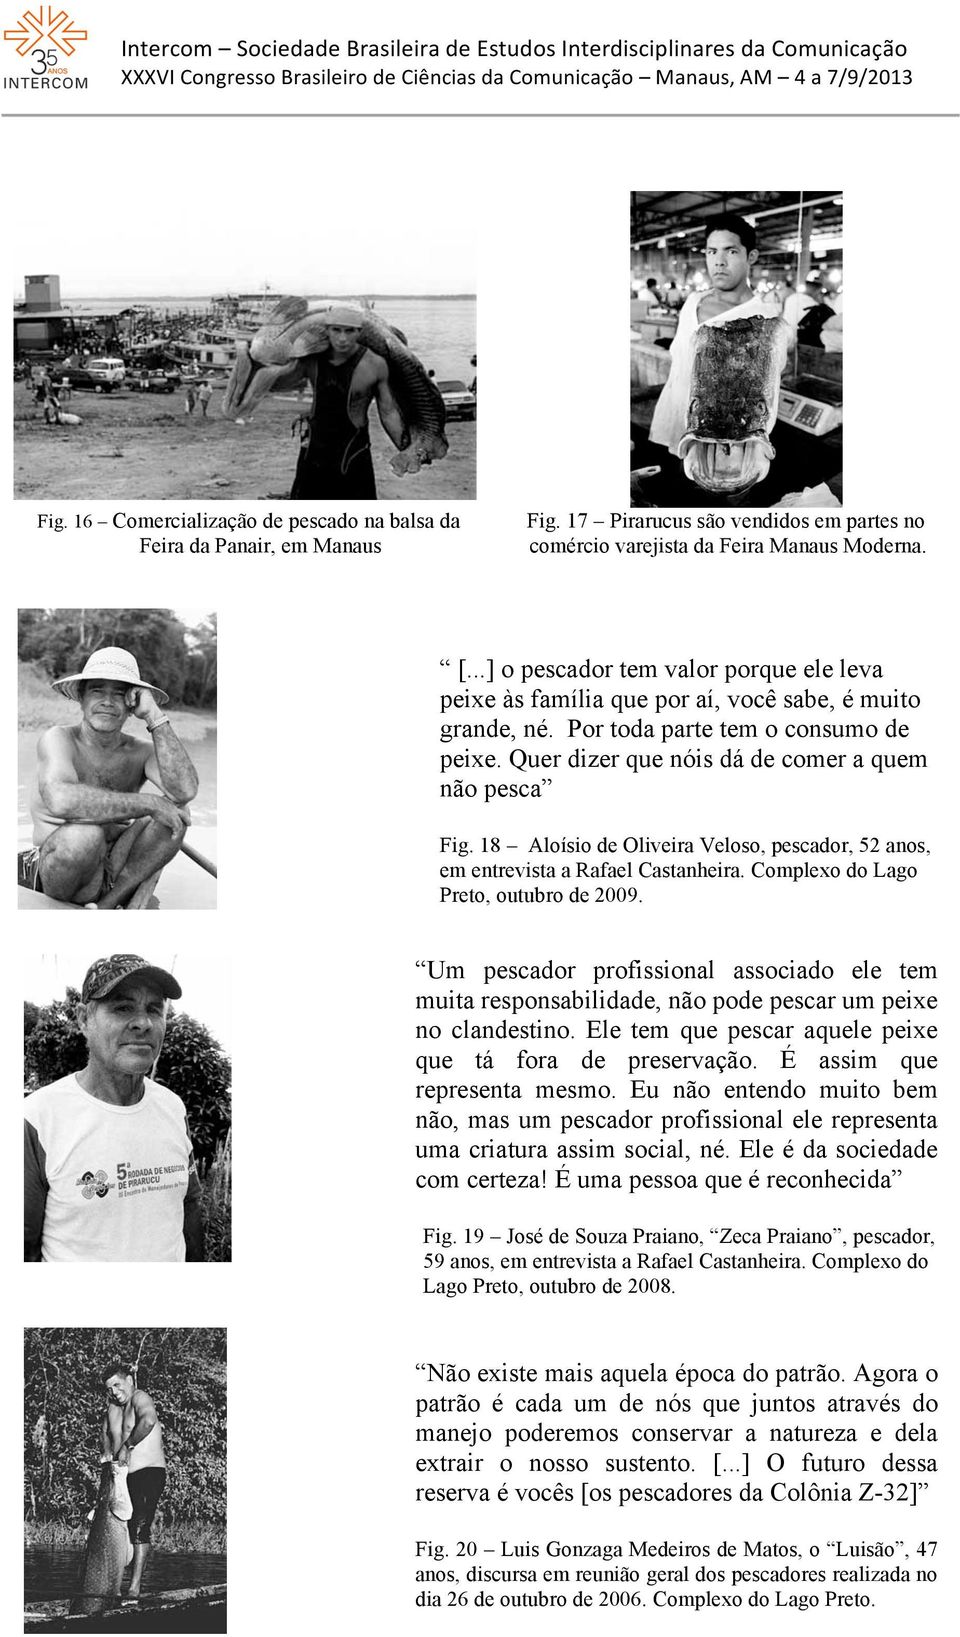 18 Aloísio de Oliveira Veloso, pescador, 52 anos, em entrevista a Rafael Castanheira. Complexo do Lago Preto, outubro de 2009.